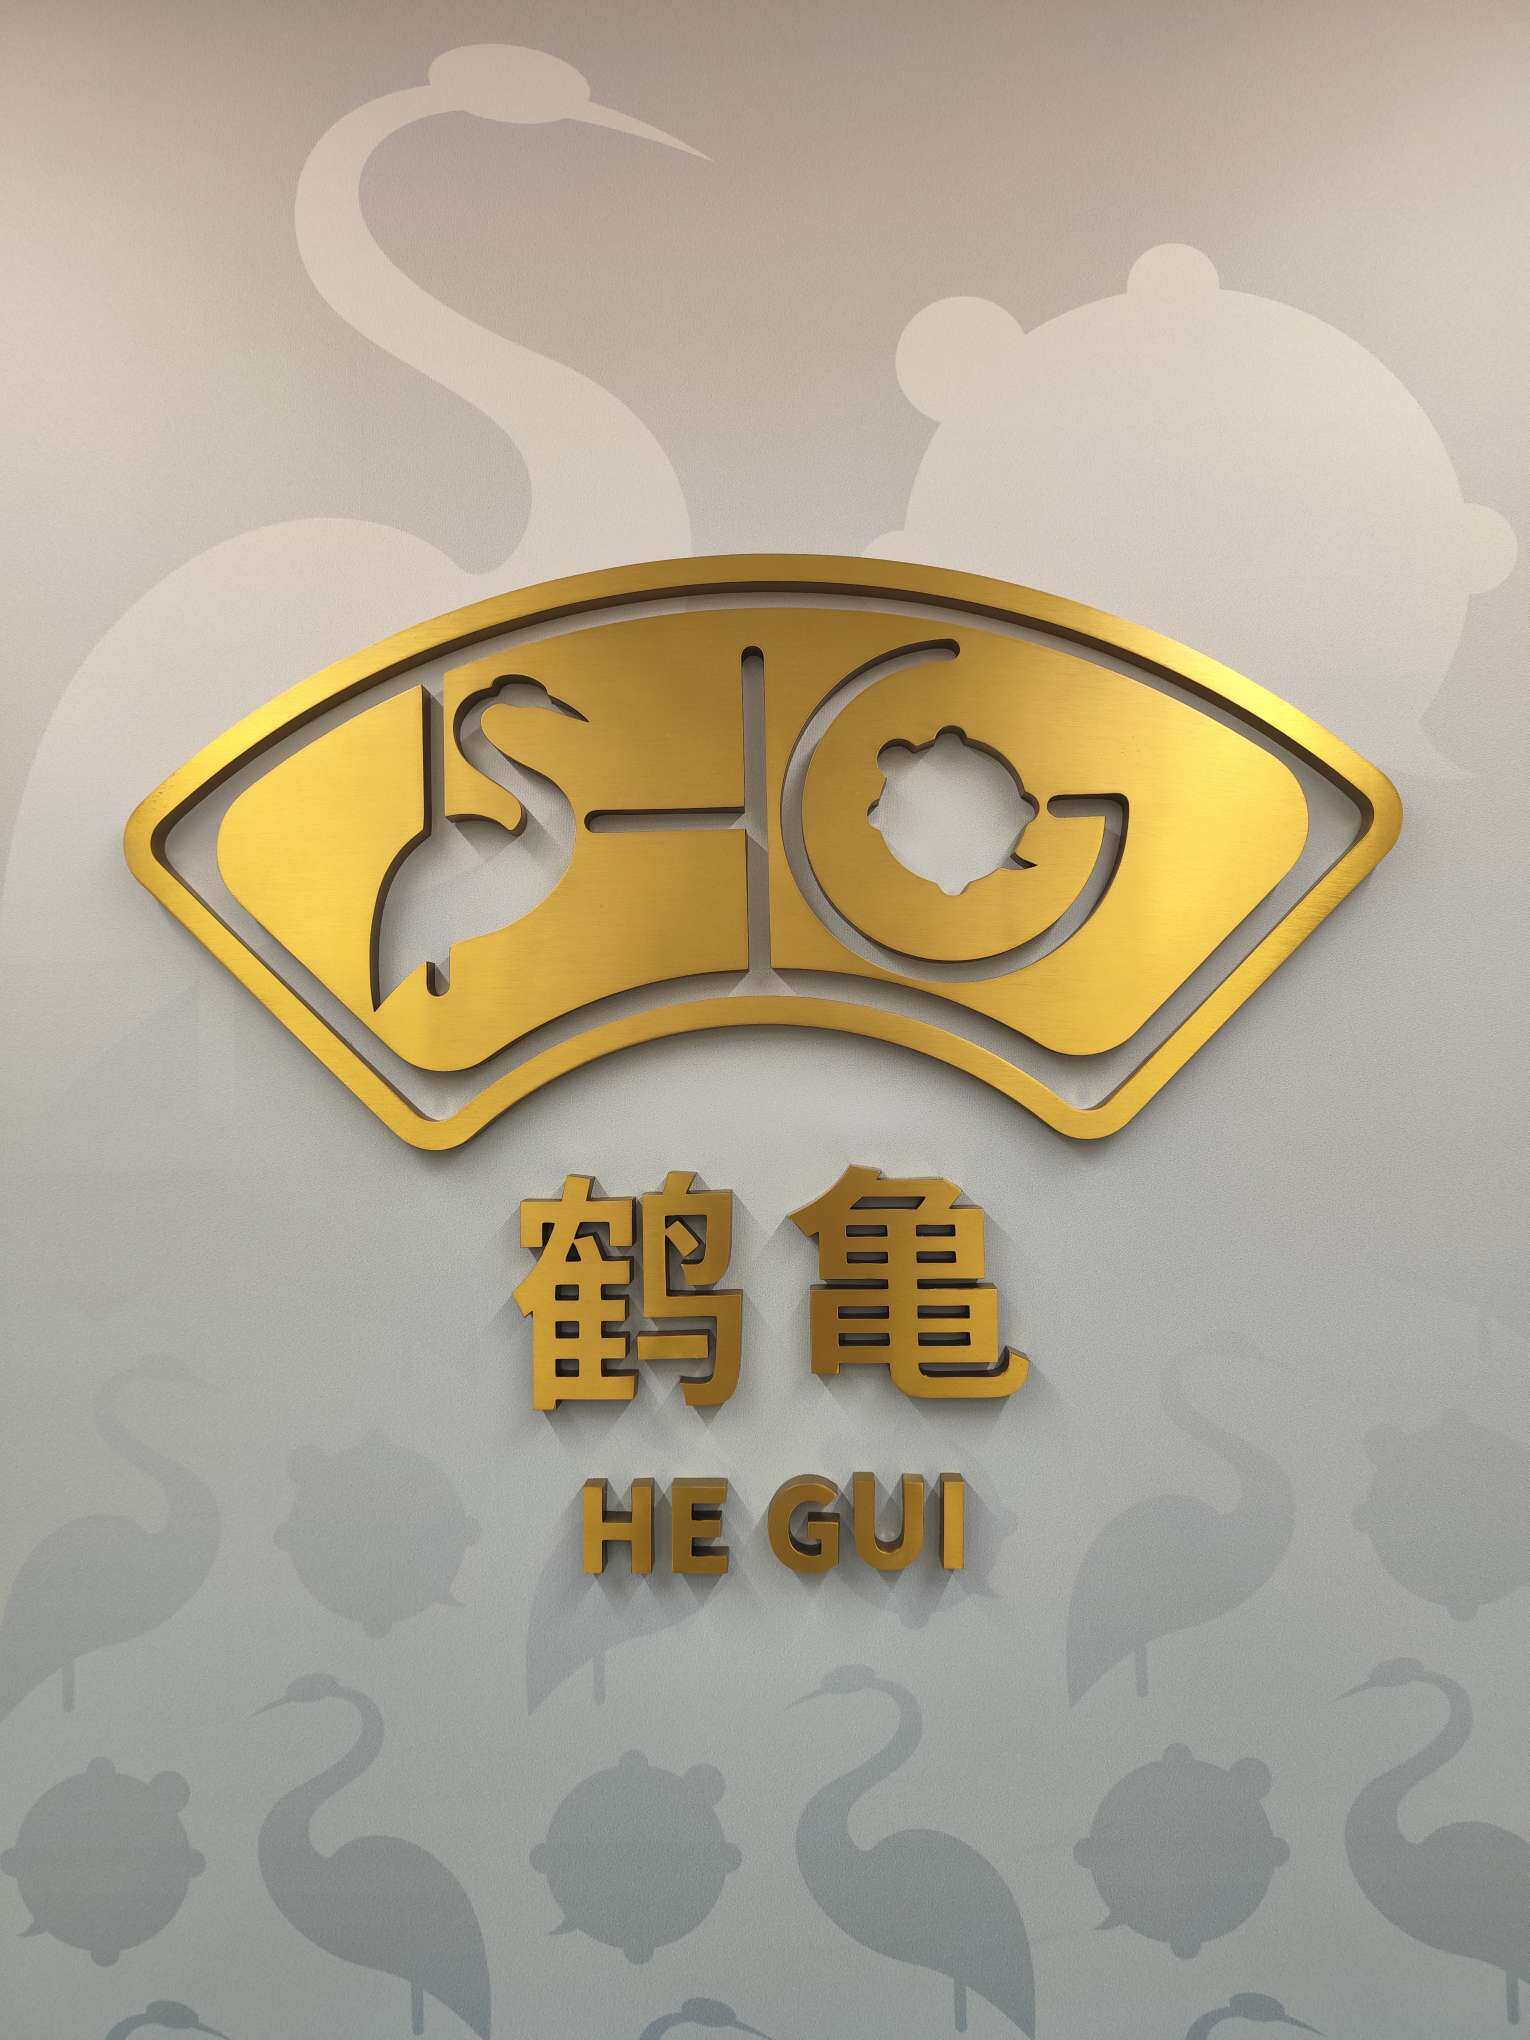 上海鹤龟生命健康科技有限公司